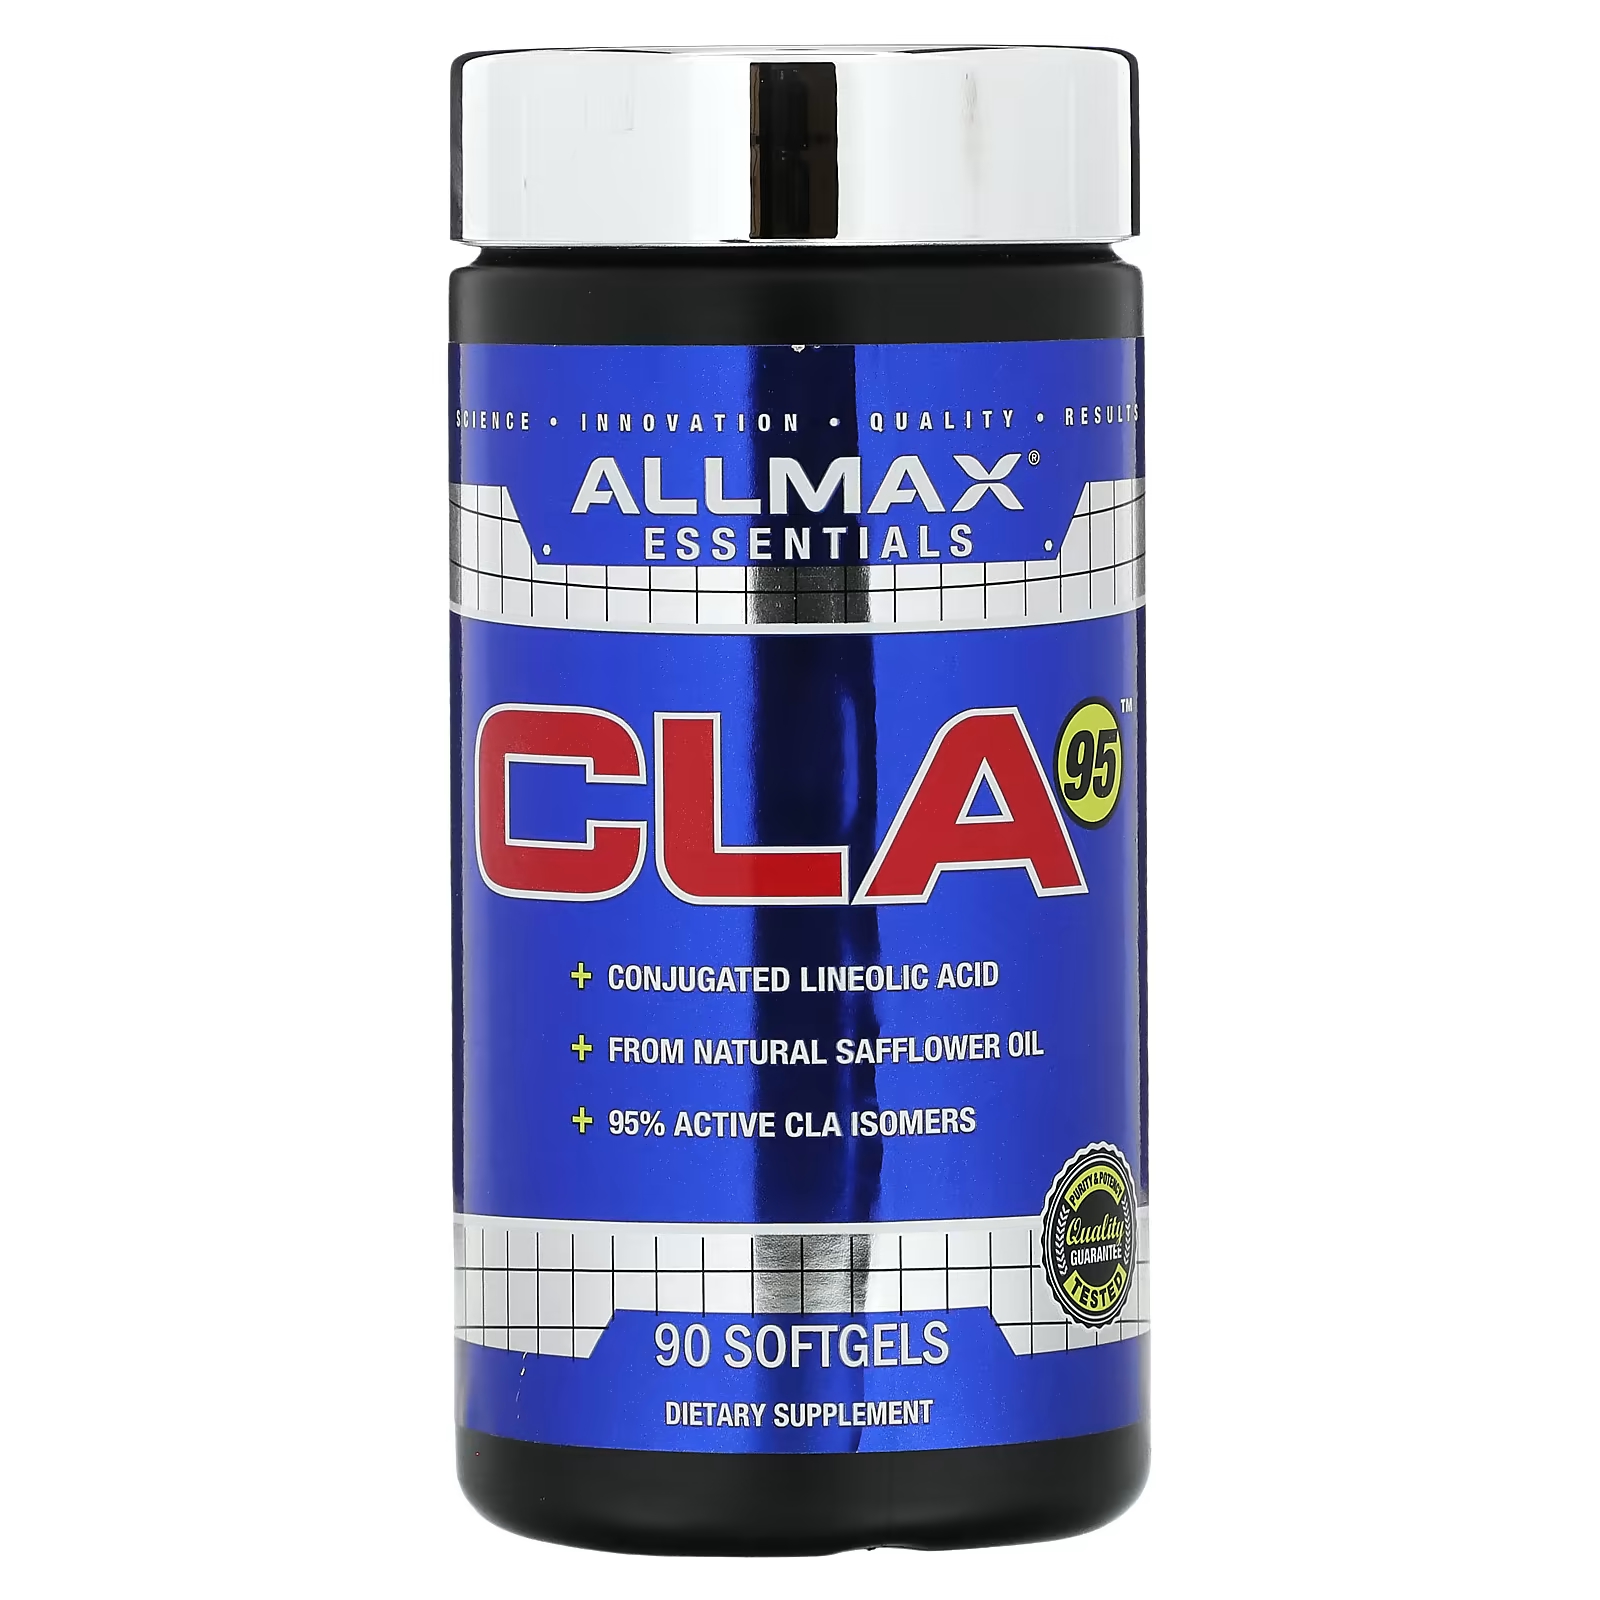 Пищевая добавка ALLMAX CLA95, 90 капсул пищевая добавка allmax cla95 90 капсул